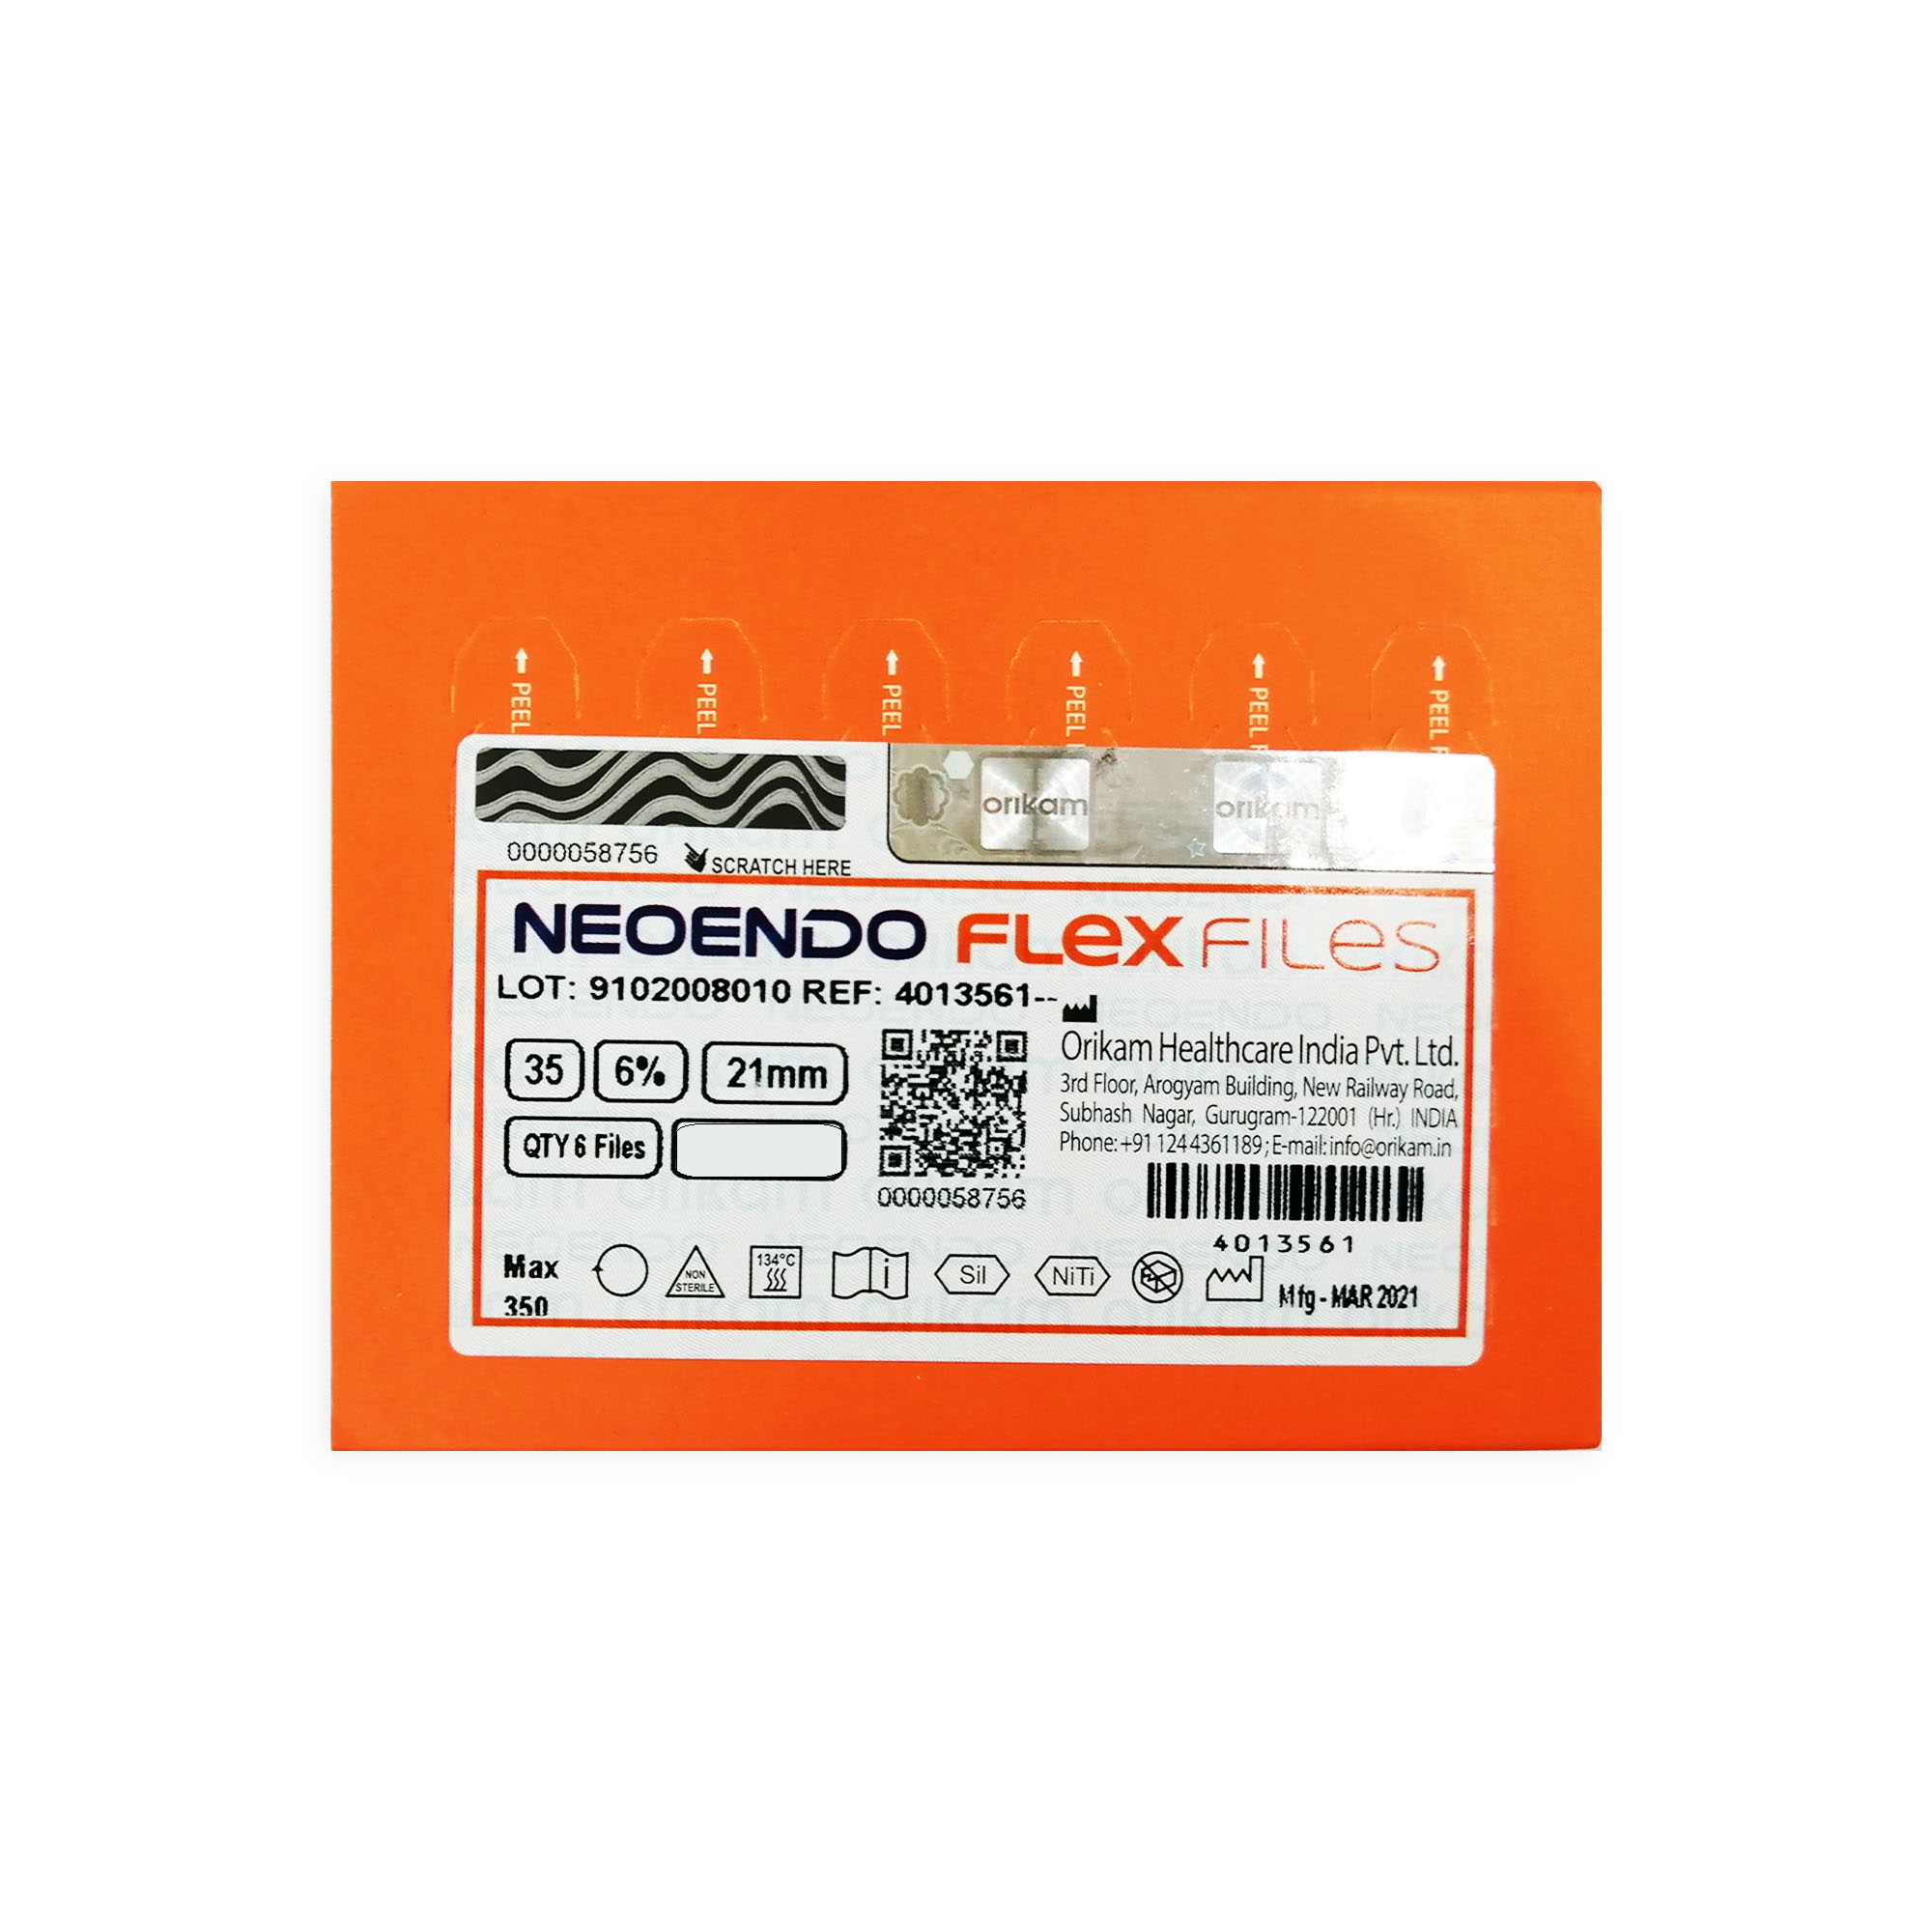 NeoEndo Flex Files 21mm 30/6 Endo Rotary Files